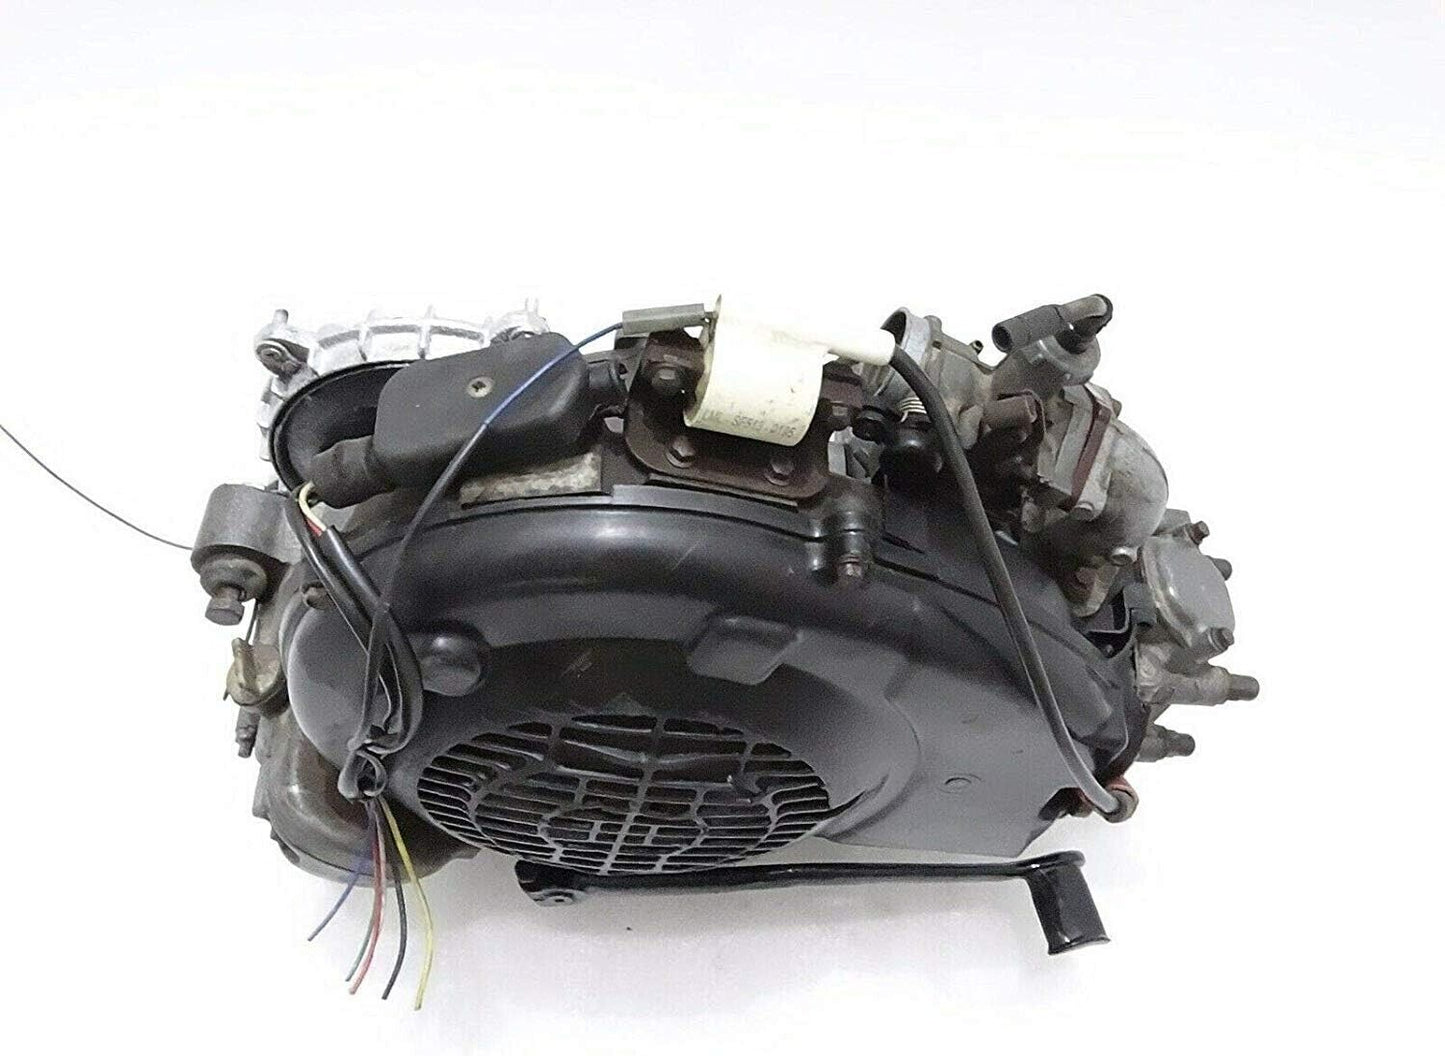 Bajaj Chetak LML Vespa 150cc Motor 4 Tiempos (Usado) Buen Estado